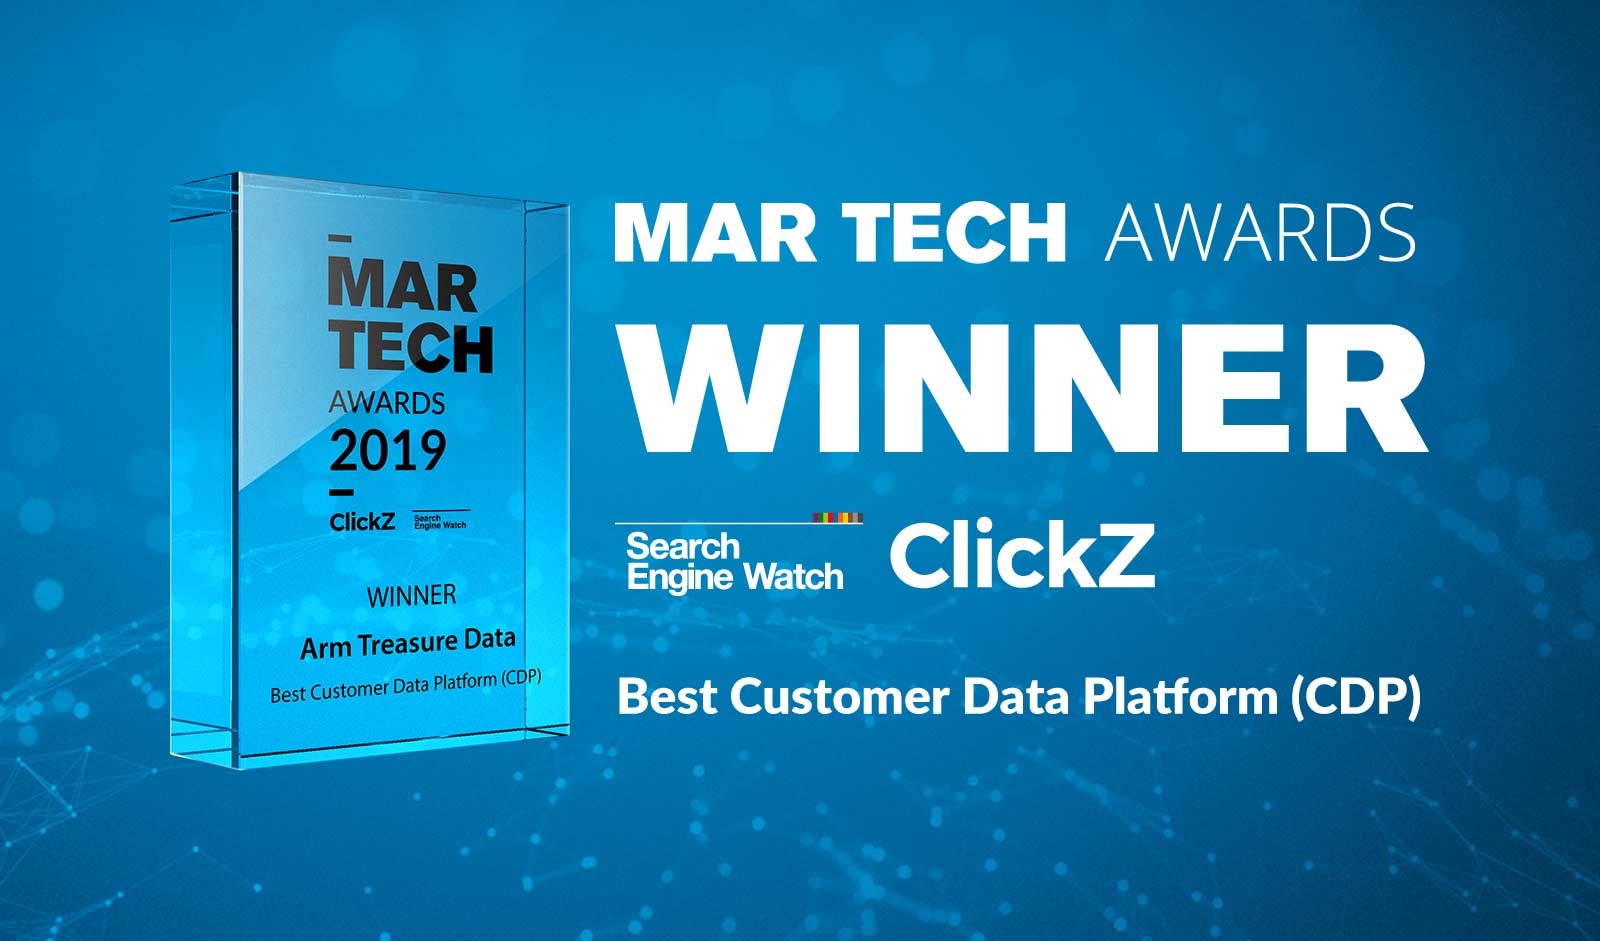 MAR TECH AWARDS WINNER｜
Search Engine Watch ClickZ
Best Customer Data Platform(CDP)